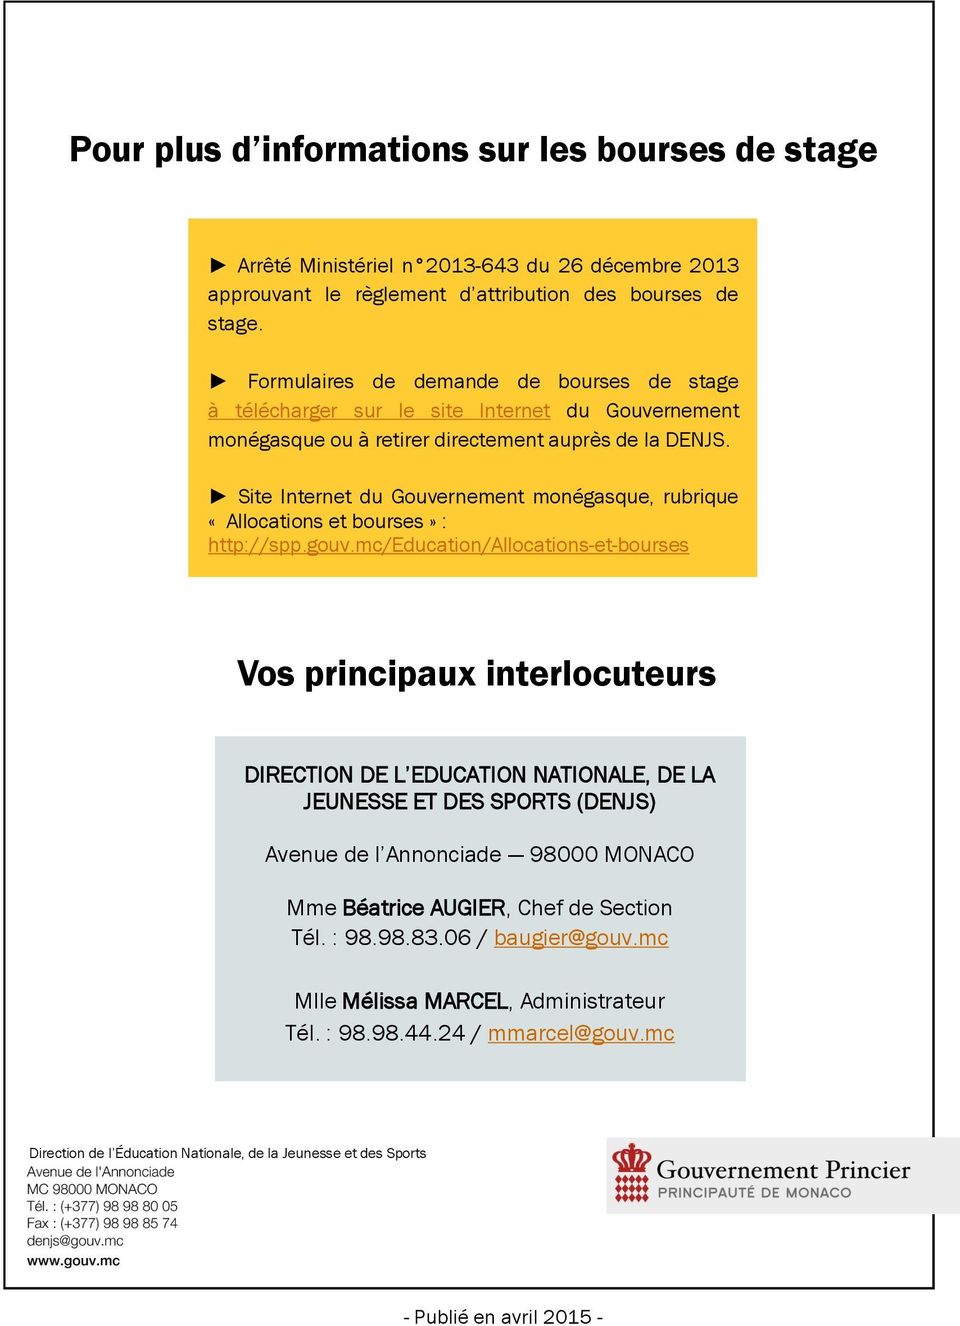 Site Internet du Gouvernement monégasque, rubrique «Allocations et bourses» : http://spp.gouv.